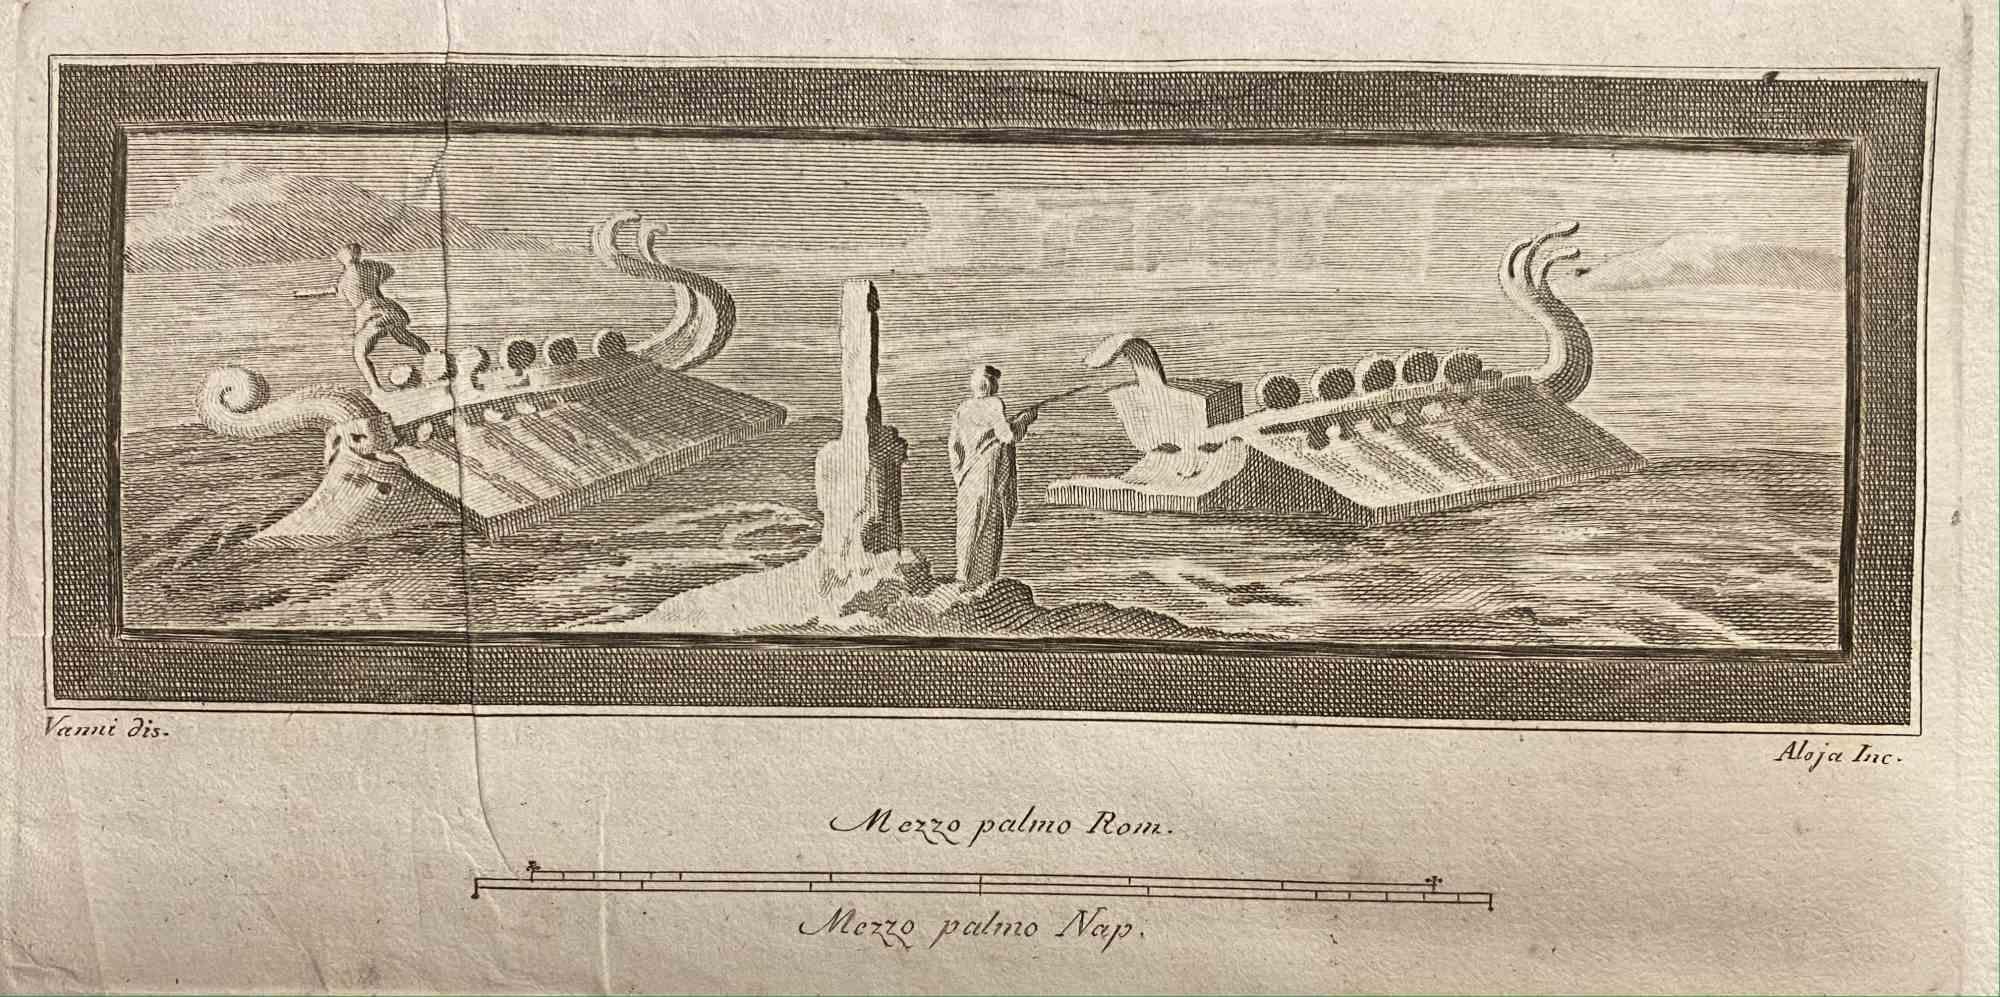 Fresque de paysage marin romain tirée des "Antiquités d'Herculanum" est une gravure sur papier réalisée par Luigi Aloja au 18e siècle.

Signé sur la plaque.

Bon état avec quelques pliures.

La gravure appartient à la suite d'estampes "Antiquités